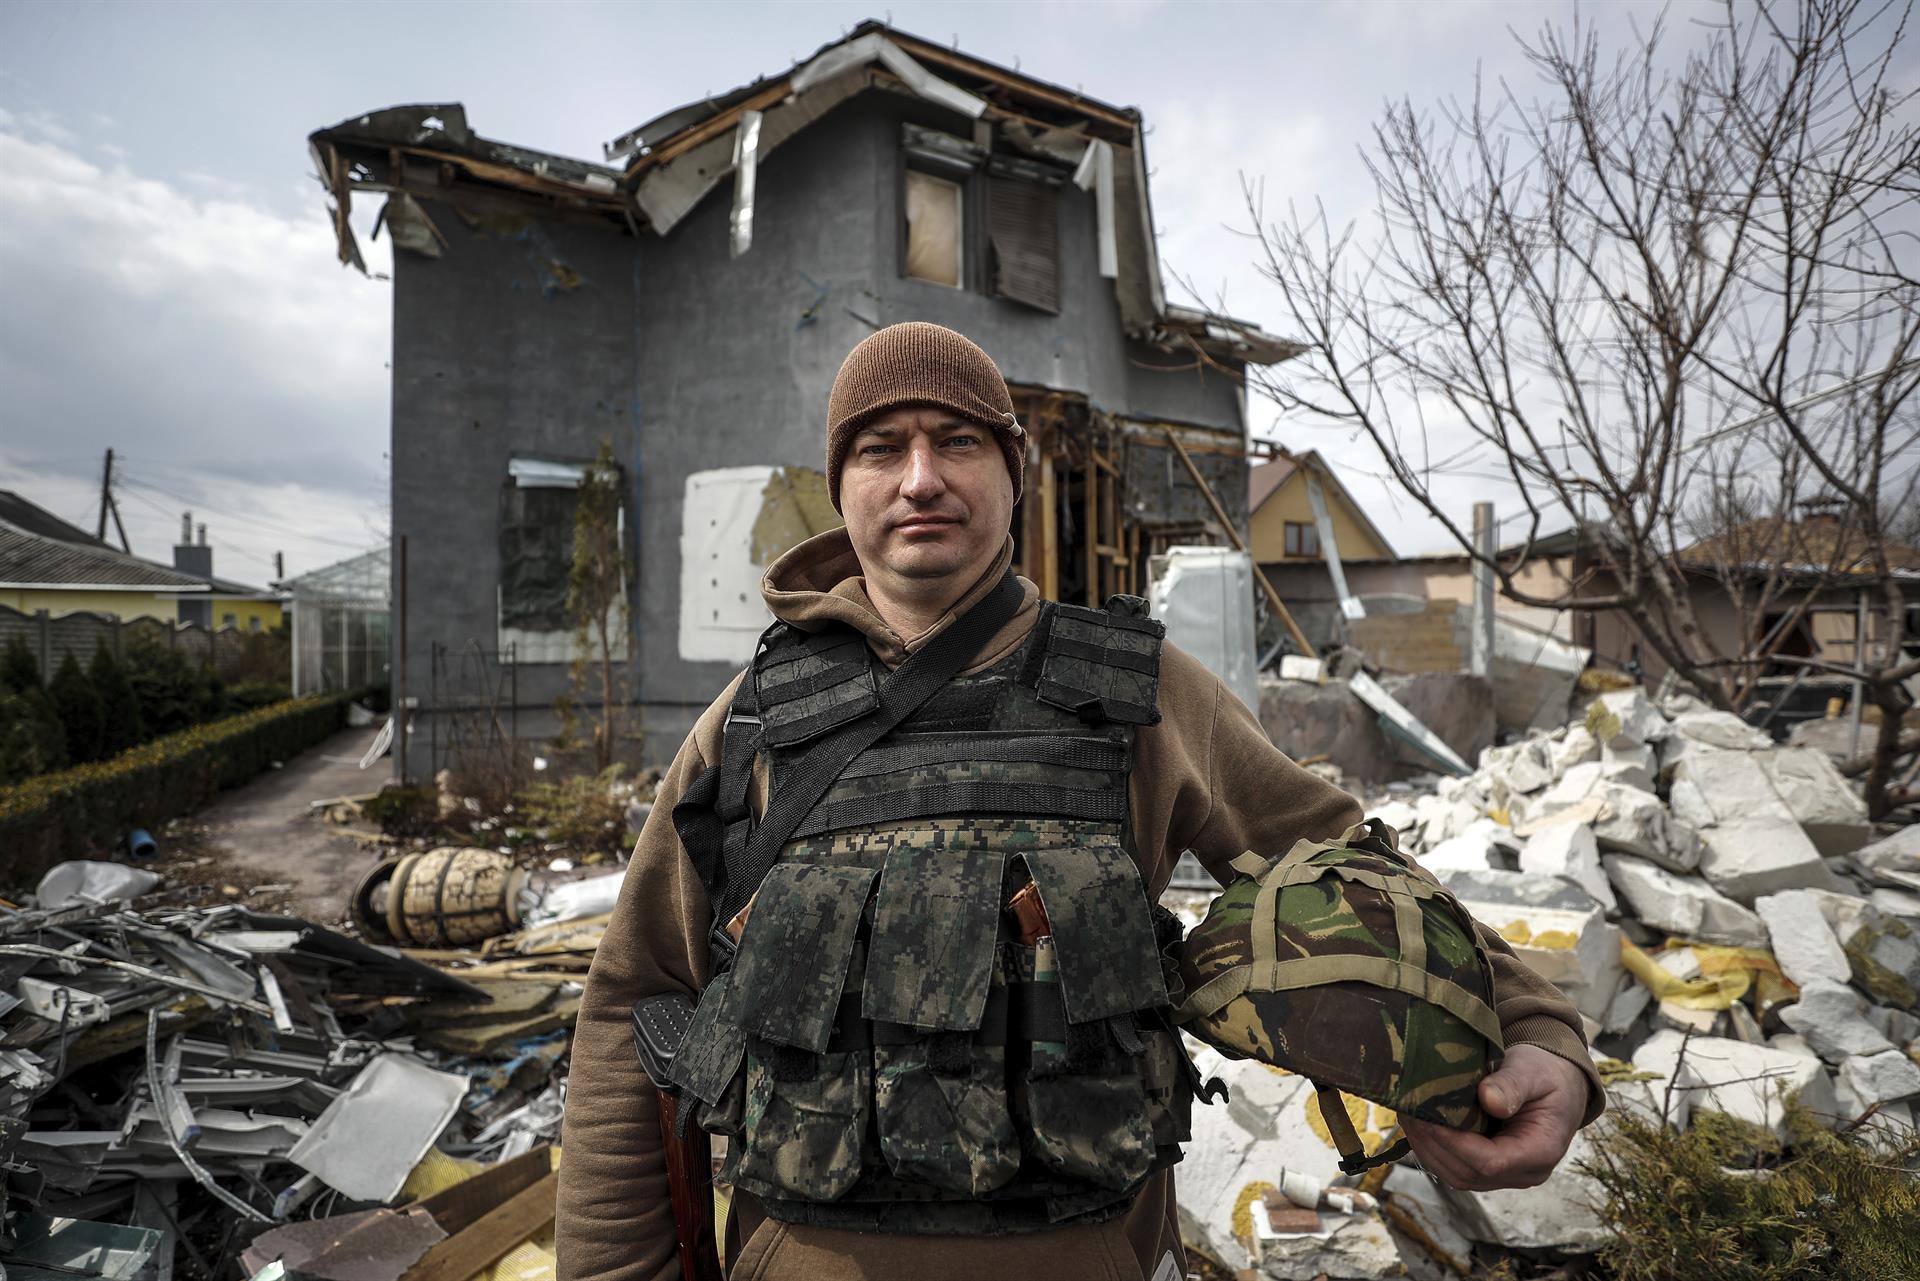 Vlad, el soldado ucraniano que se salvó seis veces de la muerte